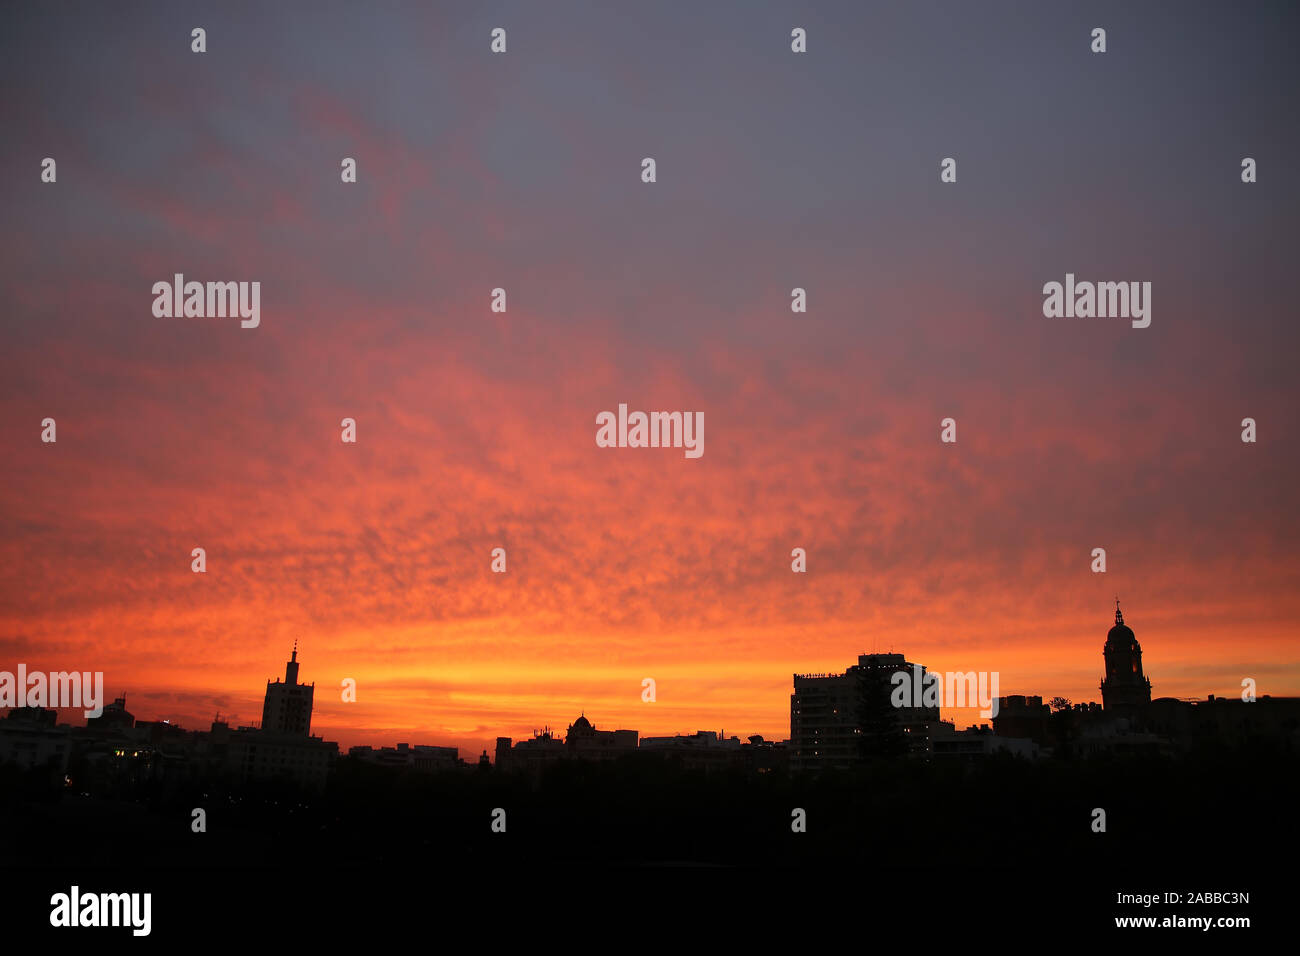 Schönen bunten Sonnenuntergang Himmel über die Skyline und die Dächer der Stadt, mit dem Gebäude als Silhouette, Malaga, Andalusien, Südspanien. Stockfoto